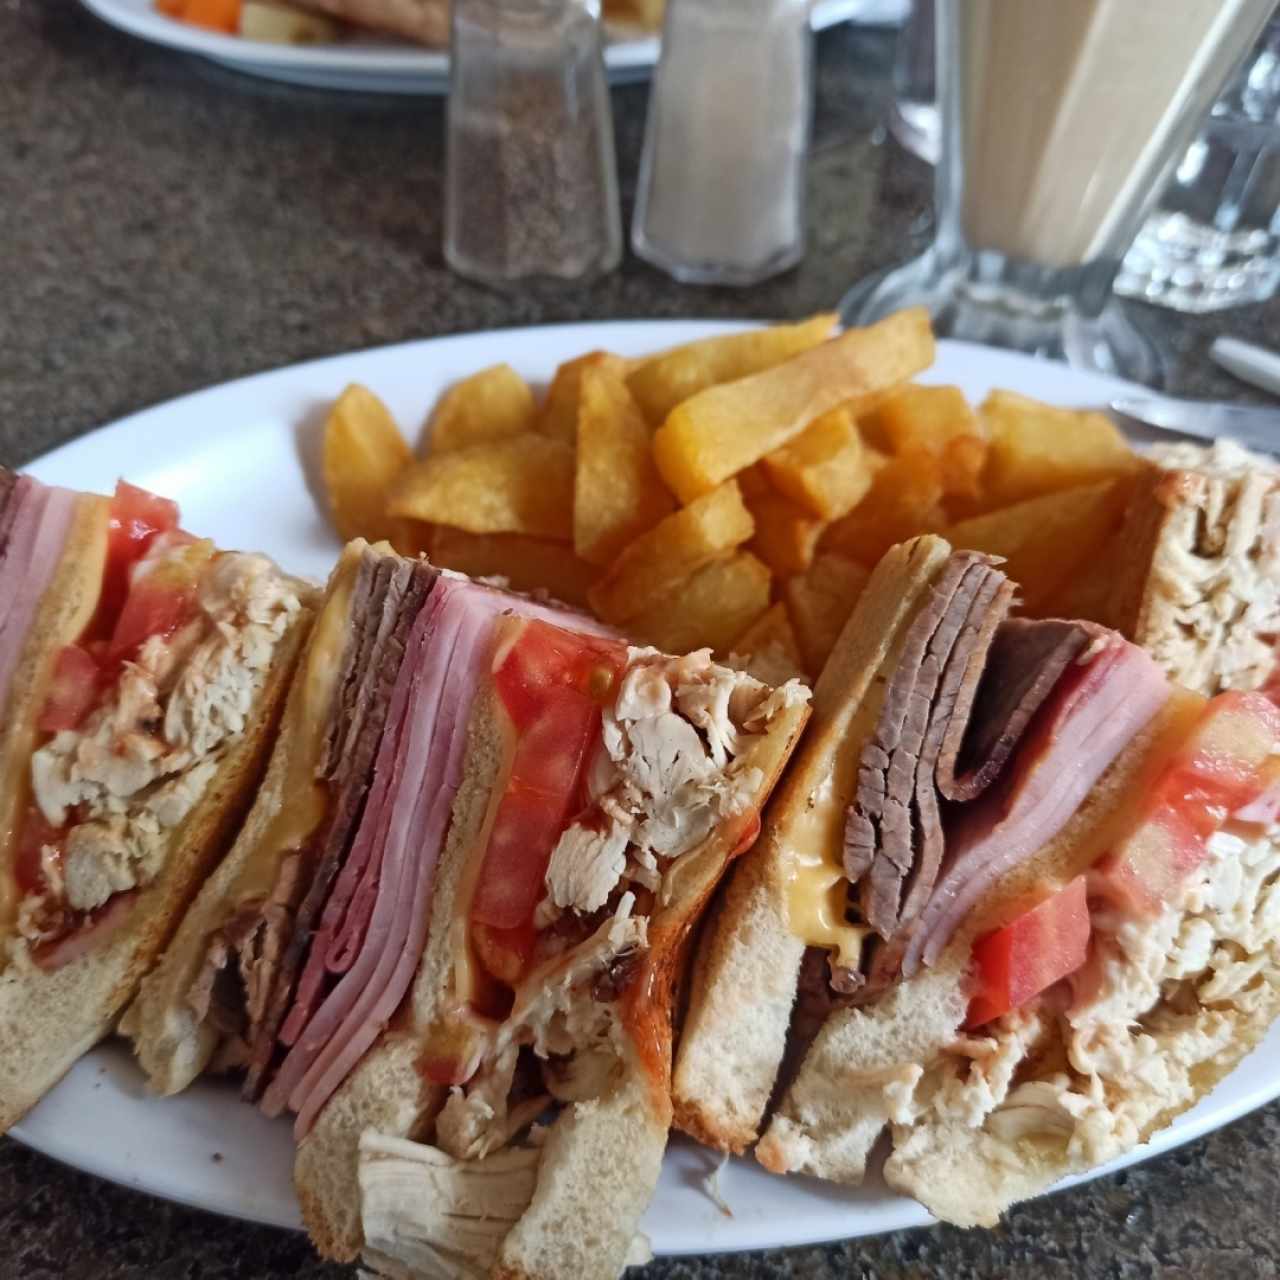 EMPAREDADOS - Club Sandwich